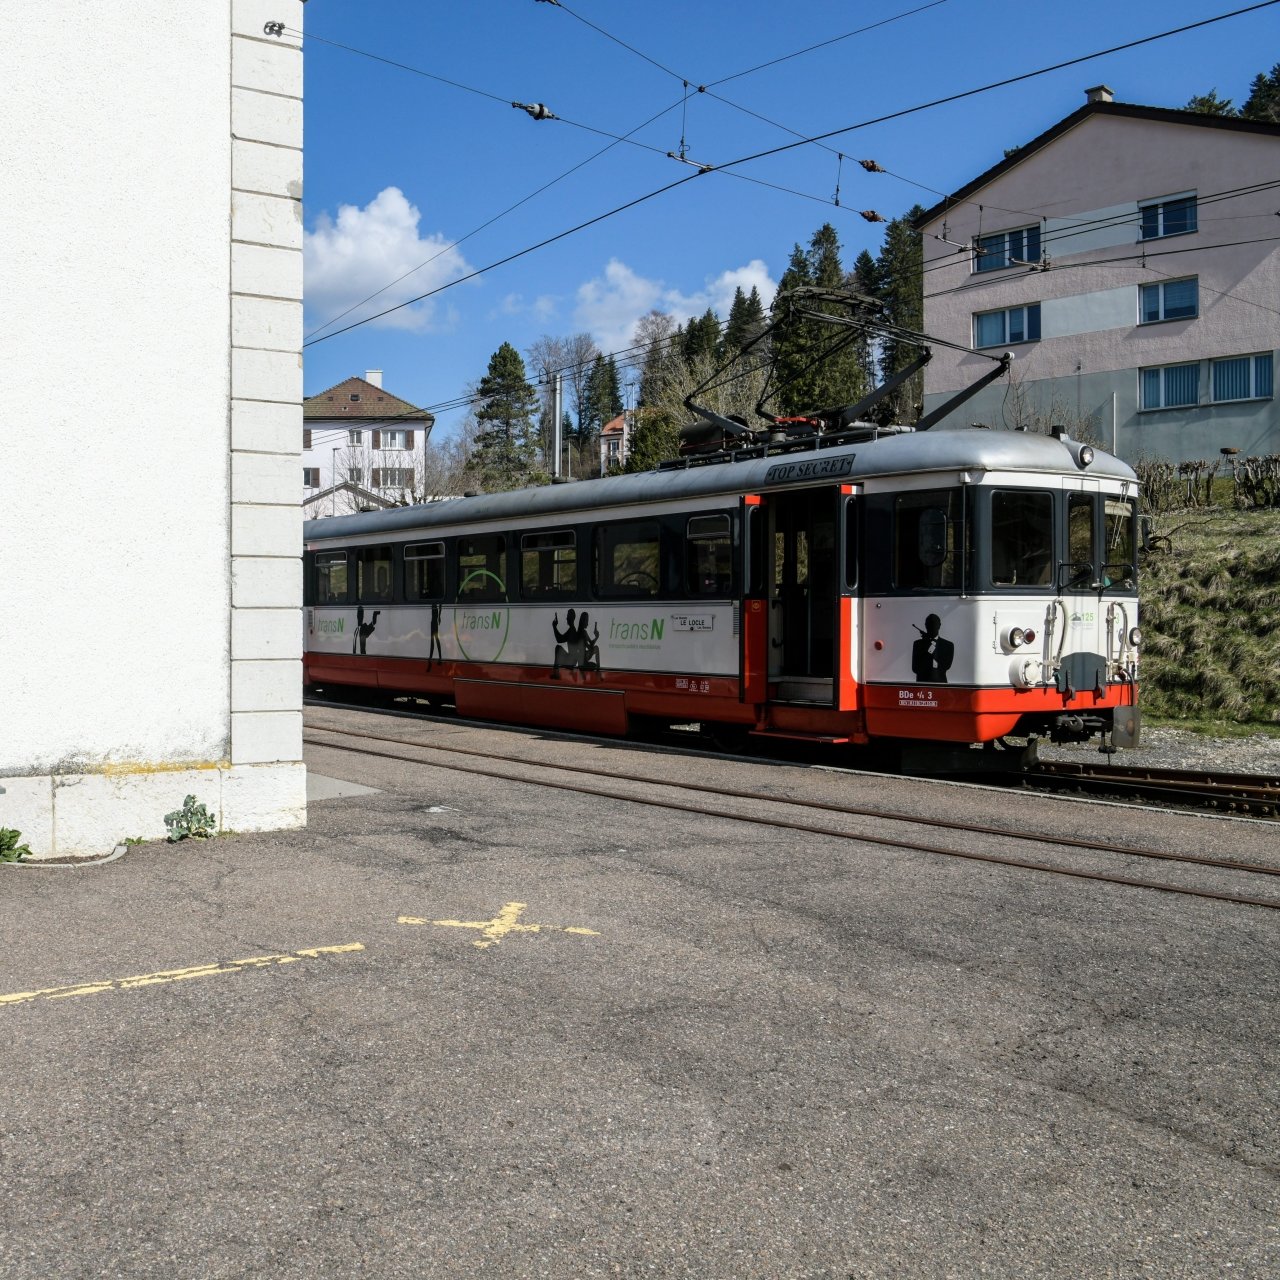 Le bus électrique, prévu pour remplacer le train reliant Le Locle aux Brenets en 2025, poursuivra sa course après la gare, jusqu'au bas du village, voire jusqu'à Villers-le-Lac.